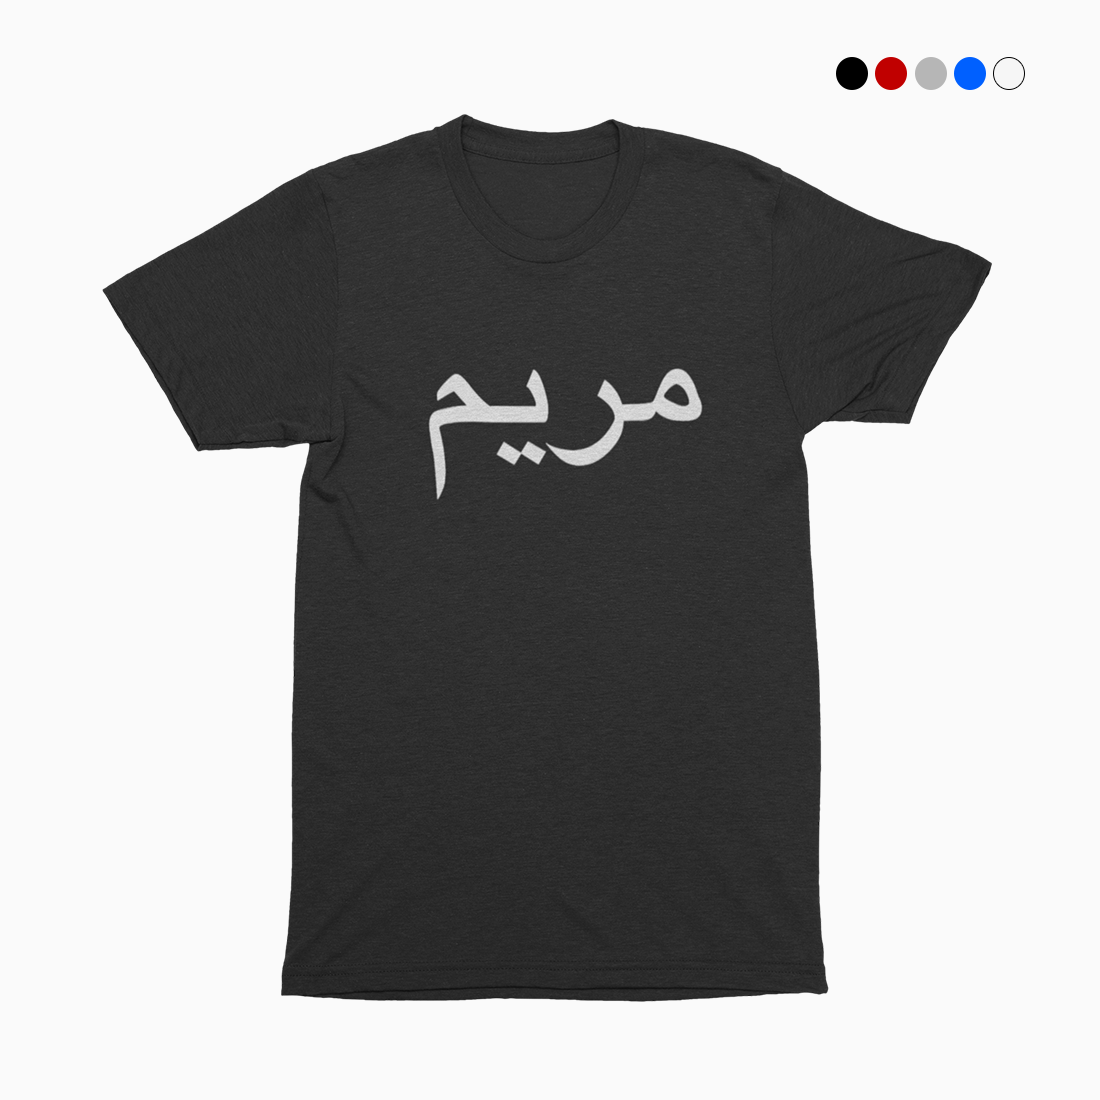 Personalised Arabic T-shirt | Arabic Name T-shirt | Getdawah